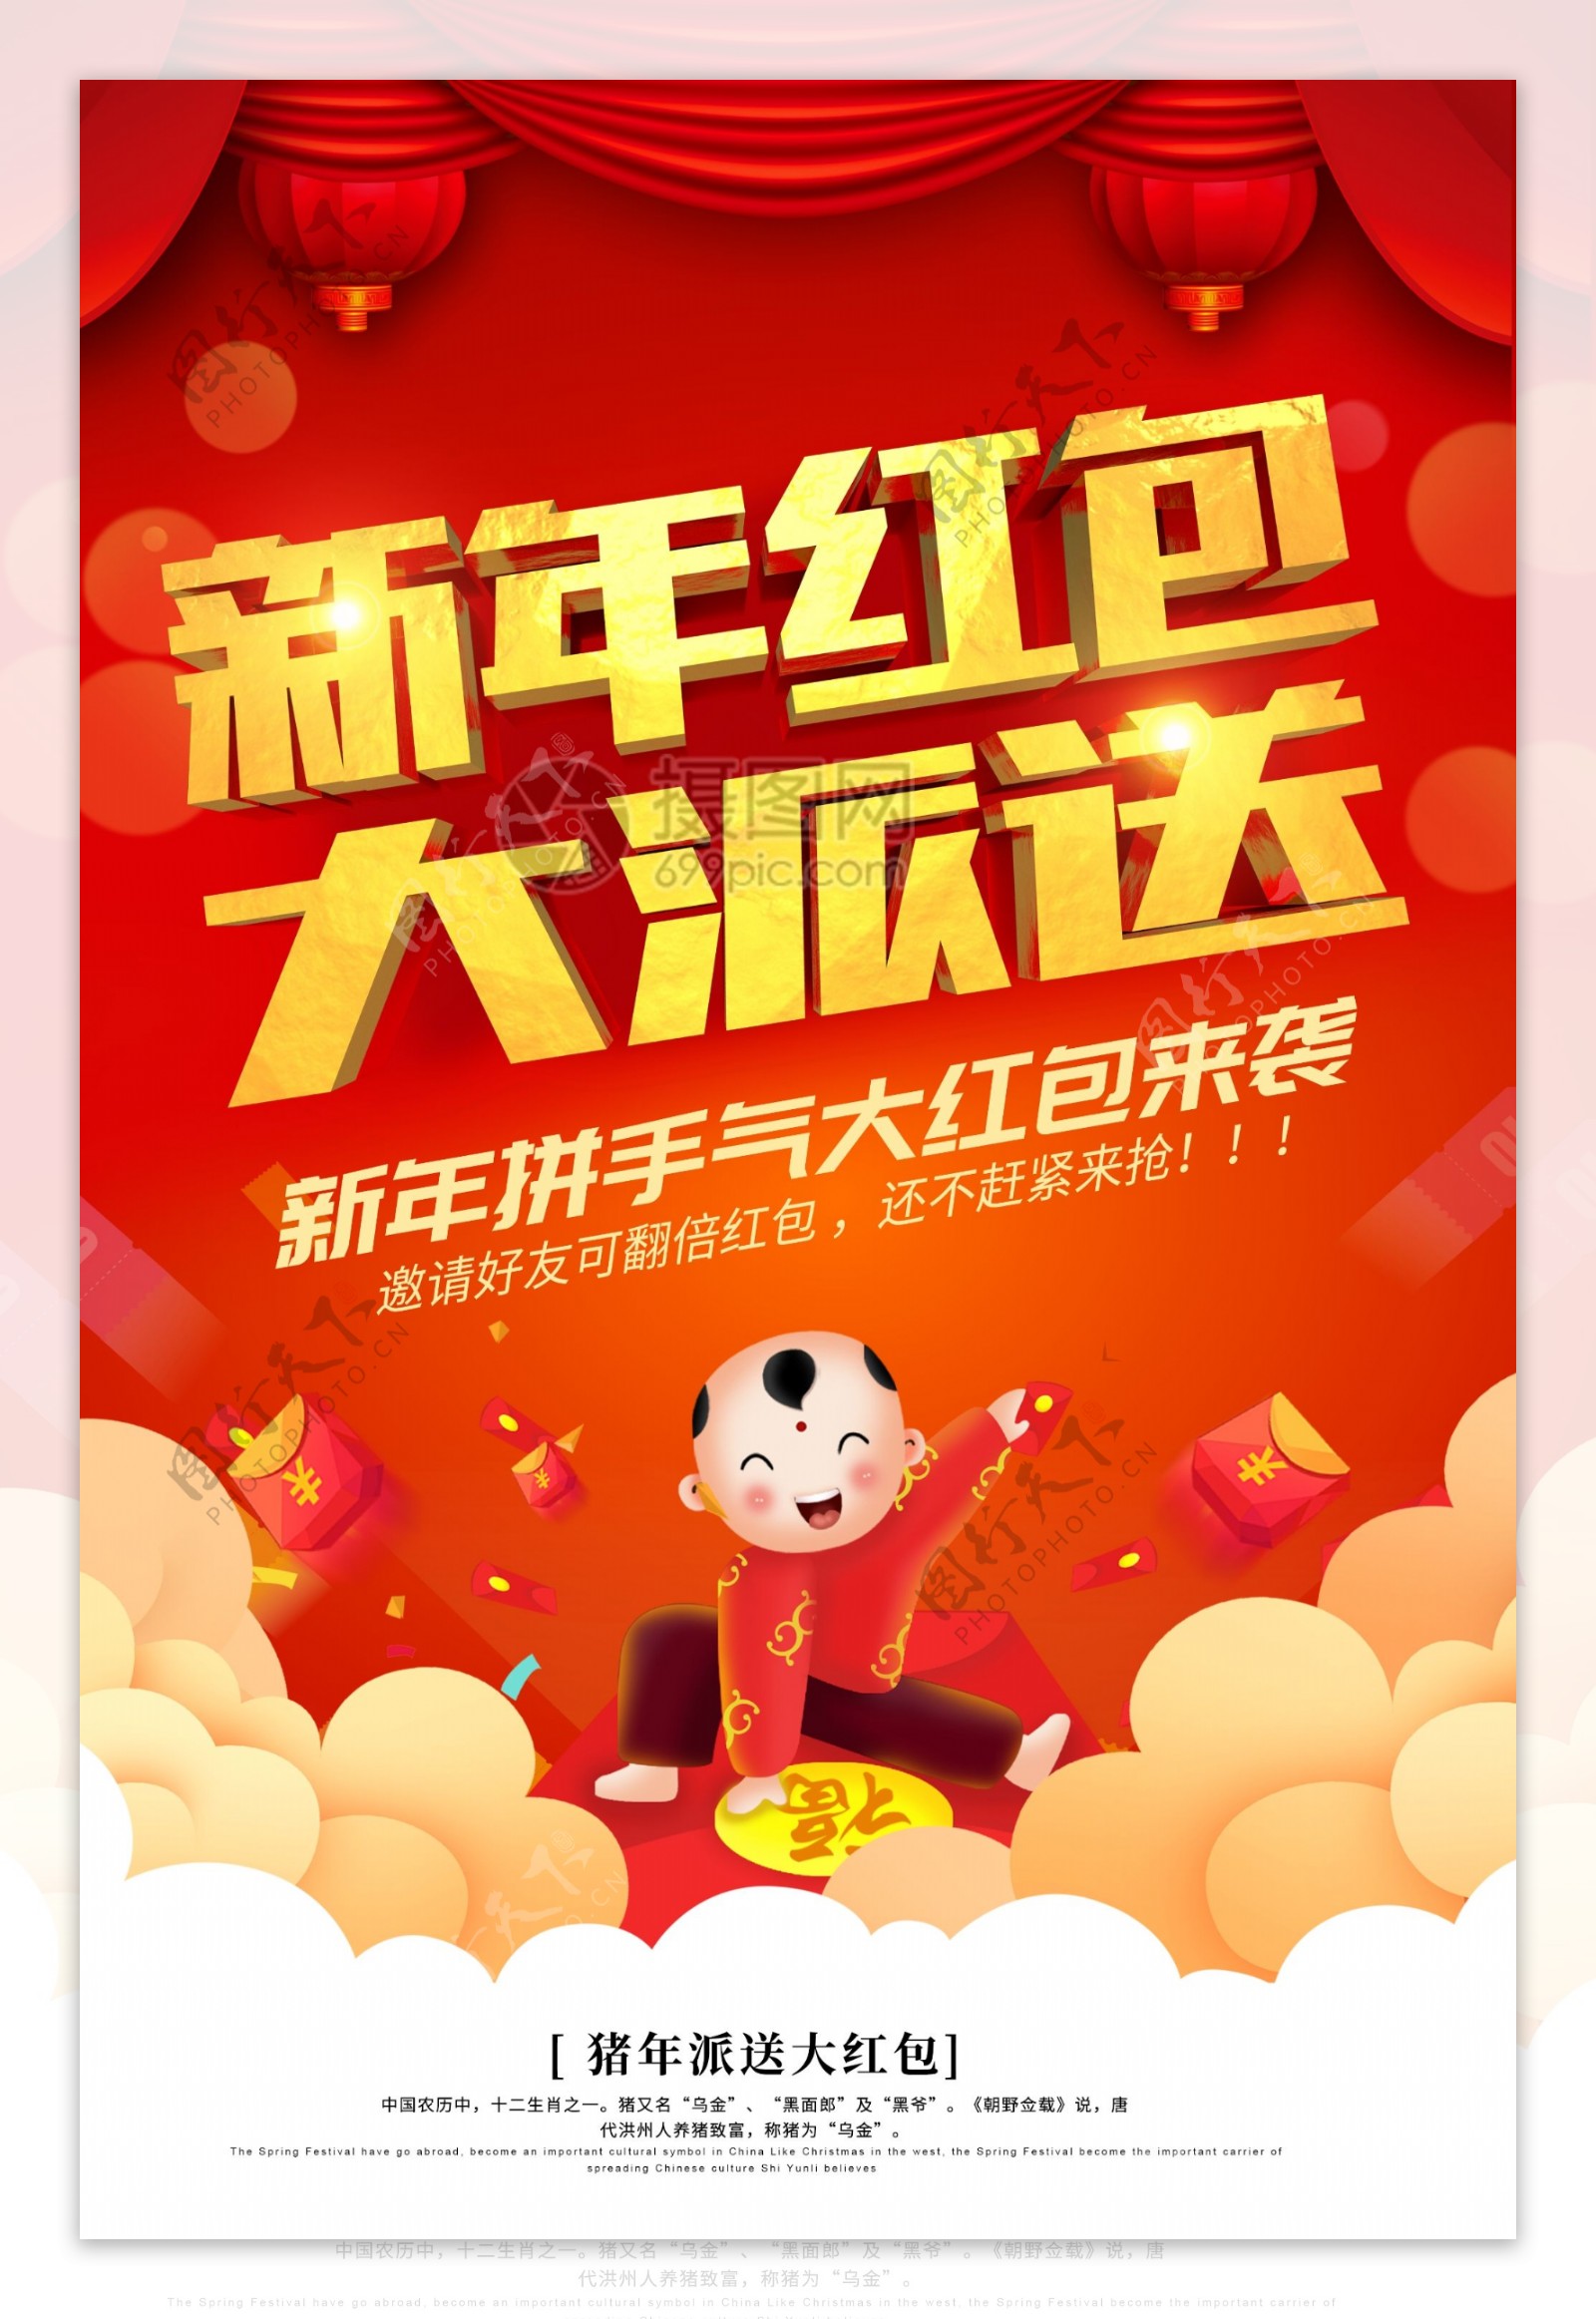 红金喜庆新年红包大派送宣传海报